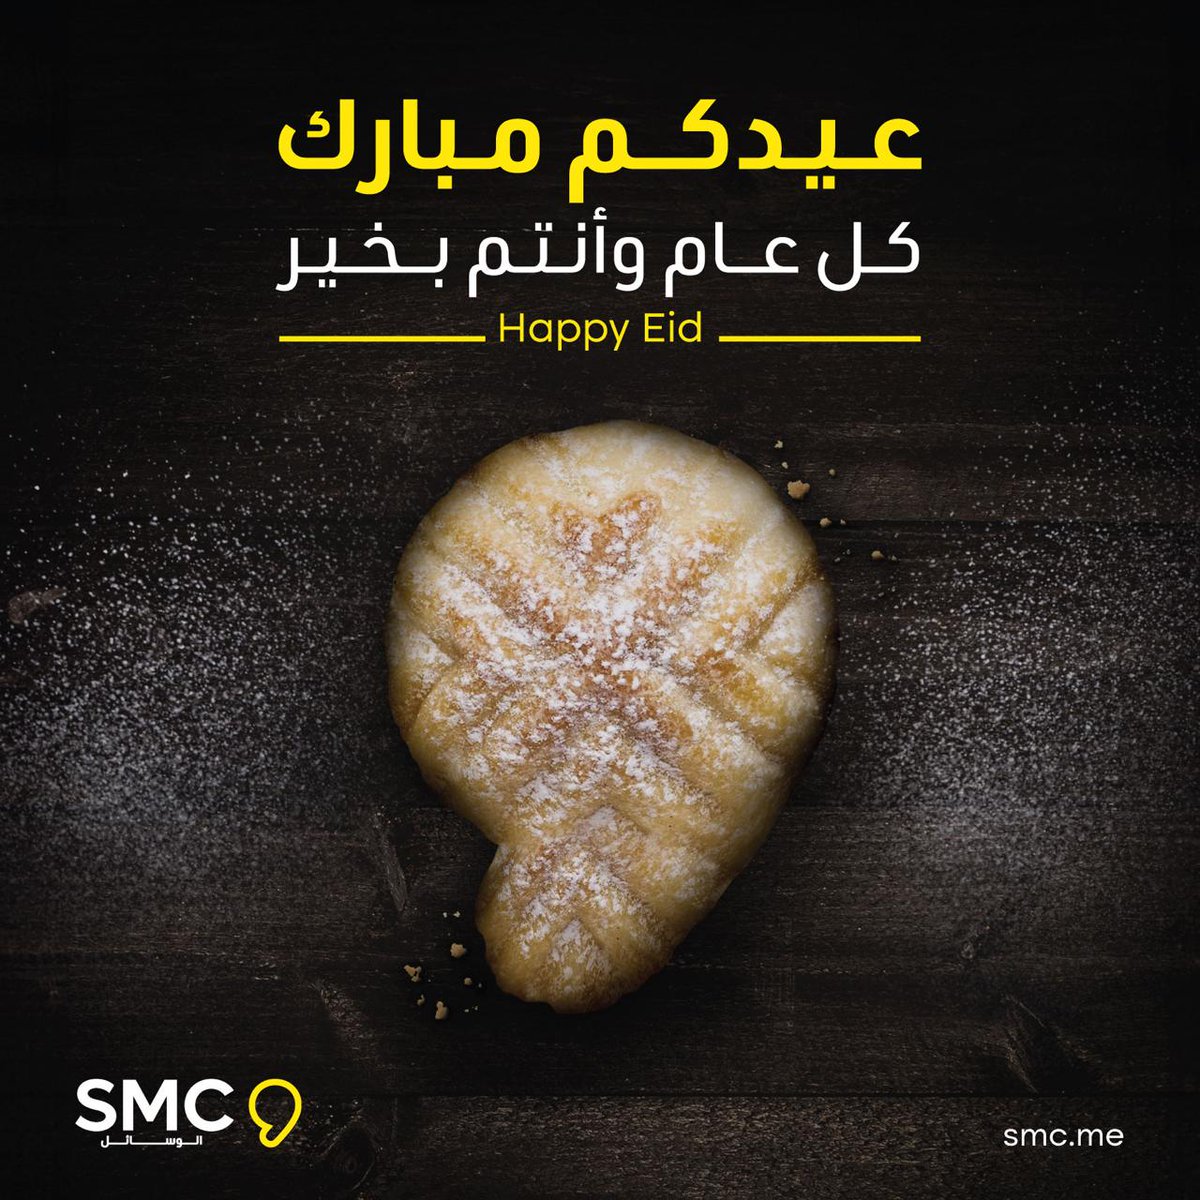 بأجمل التهاني والتبريكات تهنئكم شركة SMC الوسائل بمناسبة #عيد_الفطر_المبارك وكل عام وأنتم بخير🤍